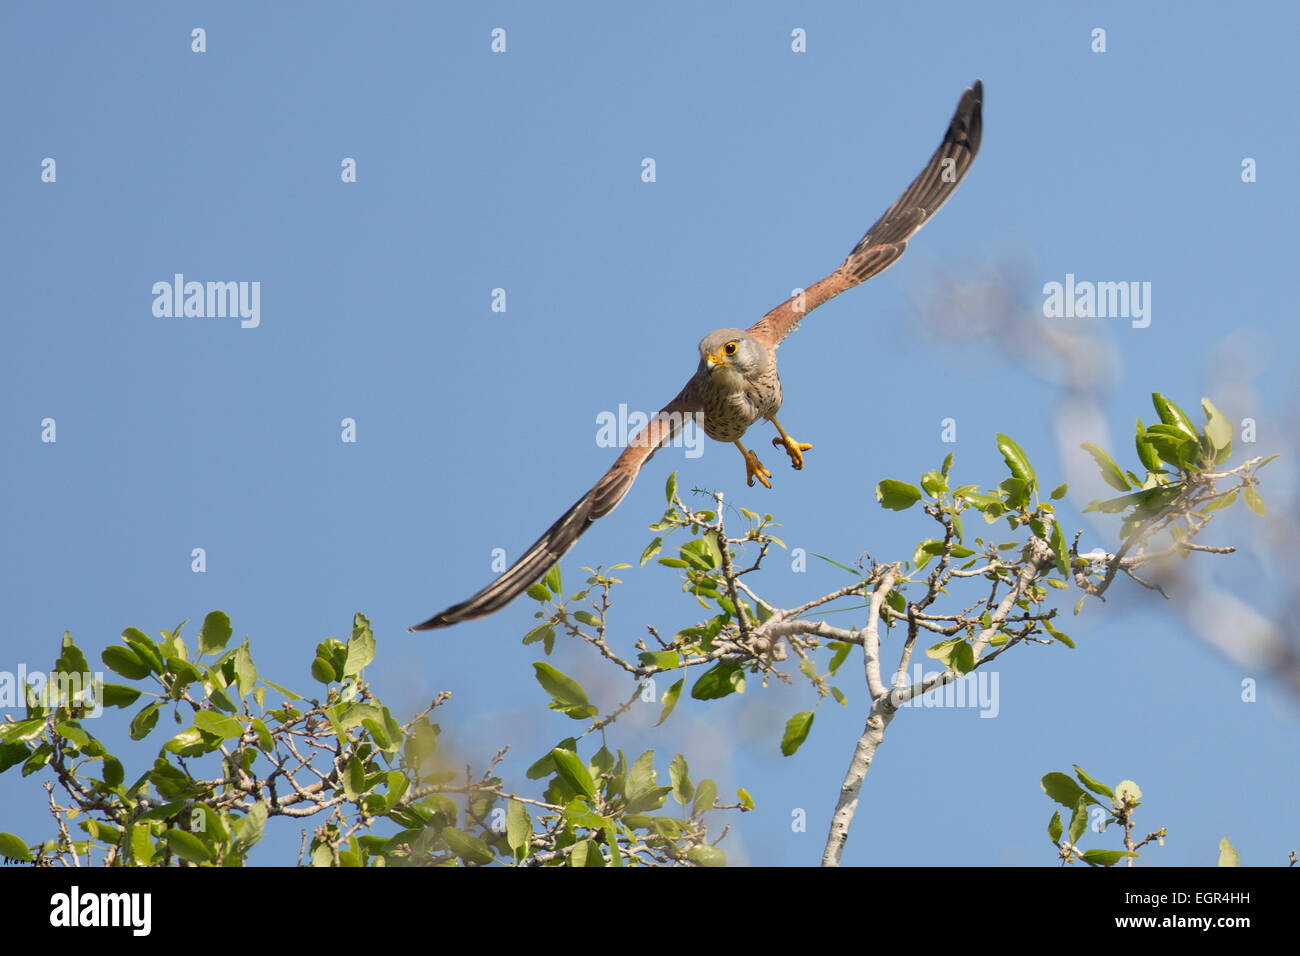 Faucon crécerelle (Falco tinnunculus) en vol. Cet oiseau de proie est un membre de la famille falcon (Falconidae). Il est répandu Banque D'Images